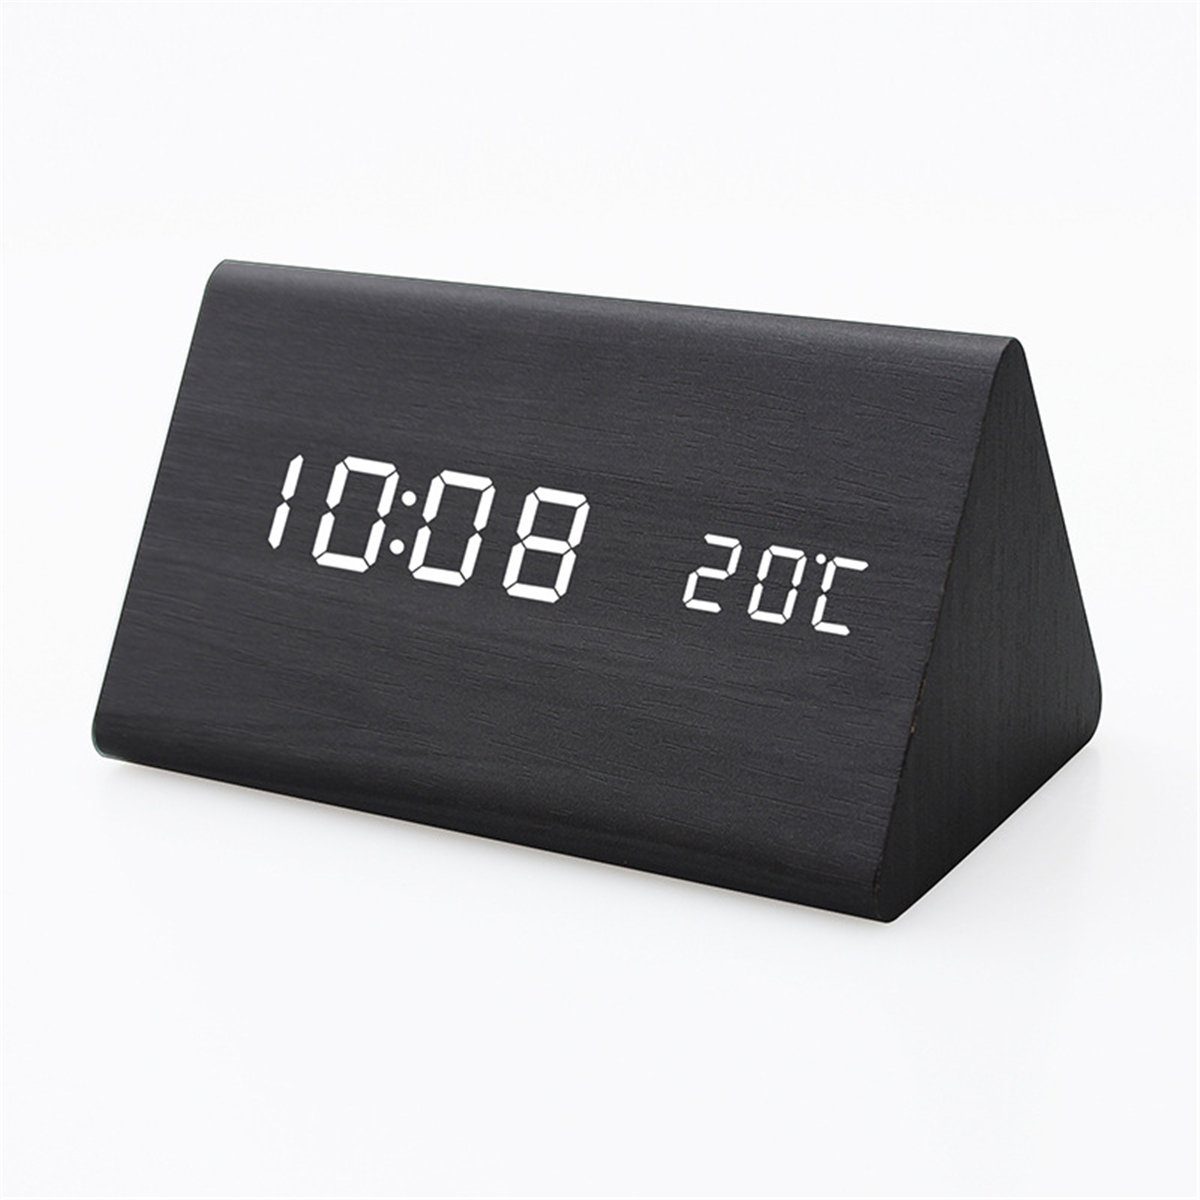 K&B Wecker Zeitanzeige aus Holz mit elektronischer LED (schwarz) | 